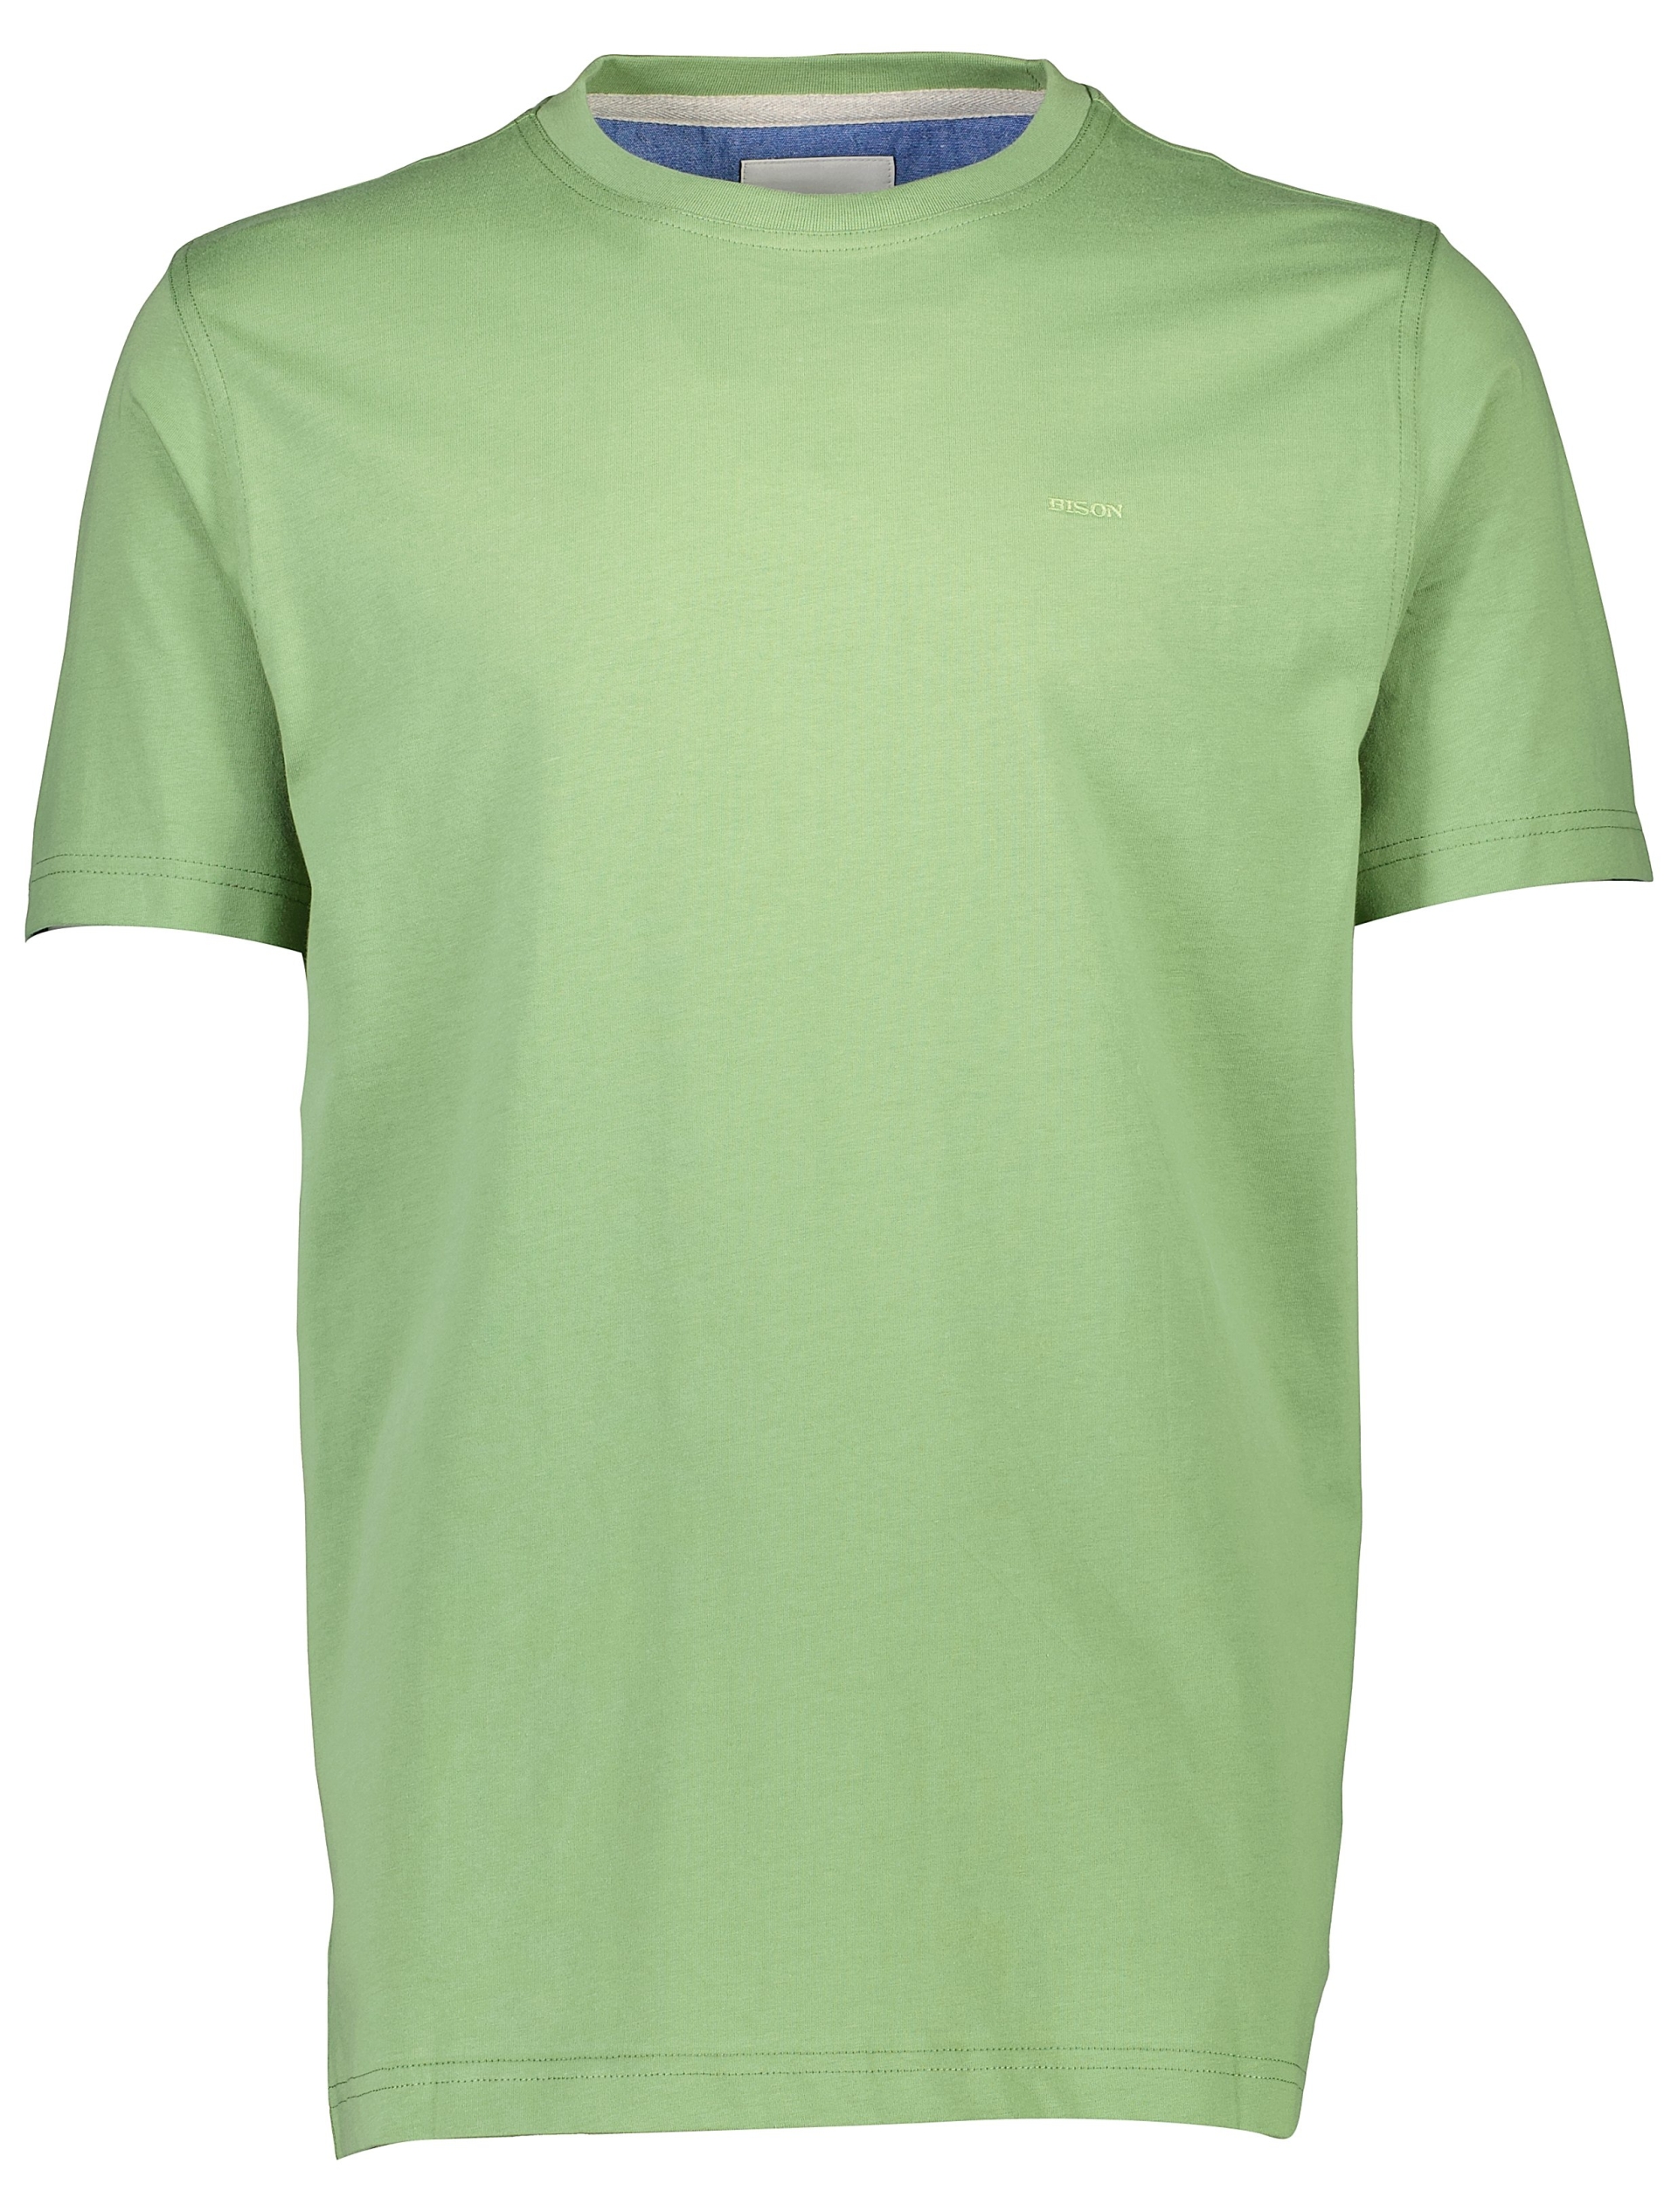 Bison T-shirt grön / lt green 224